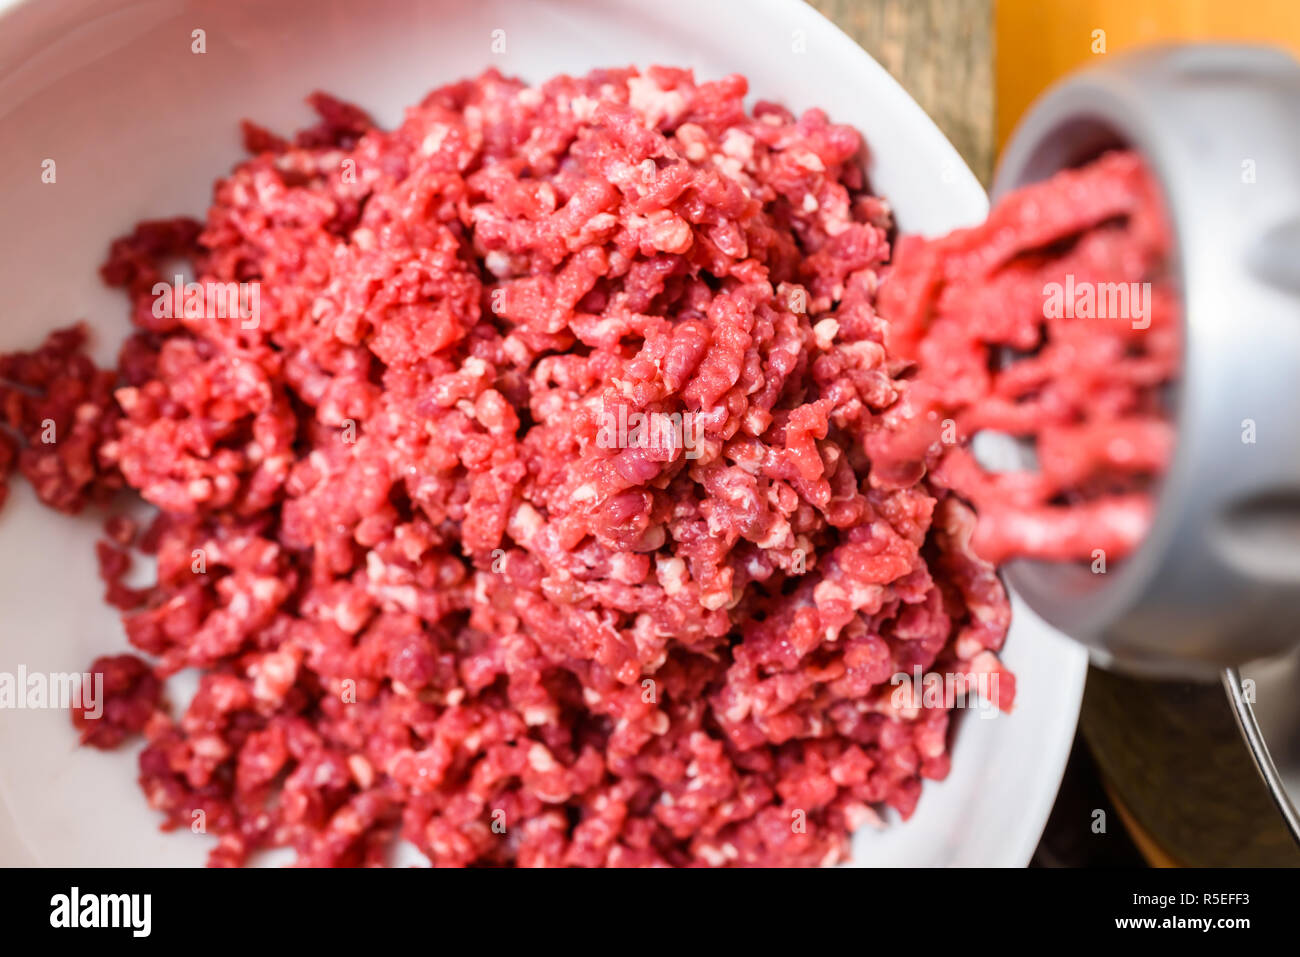 Cerca de carne picada y preparados de carne cruda Foto de stock